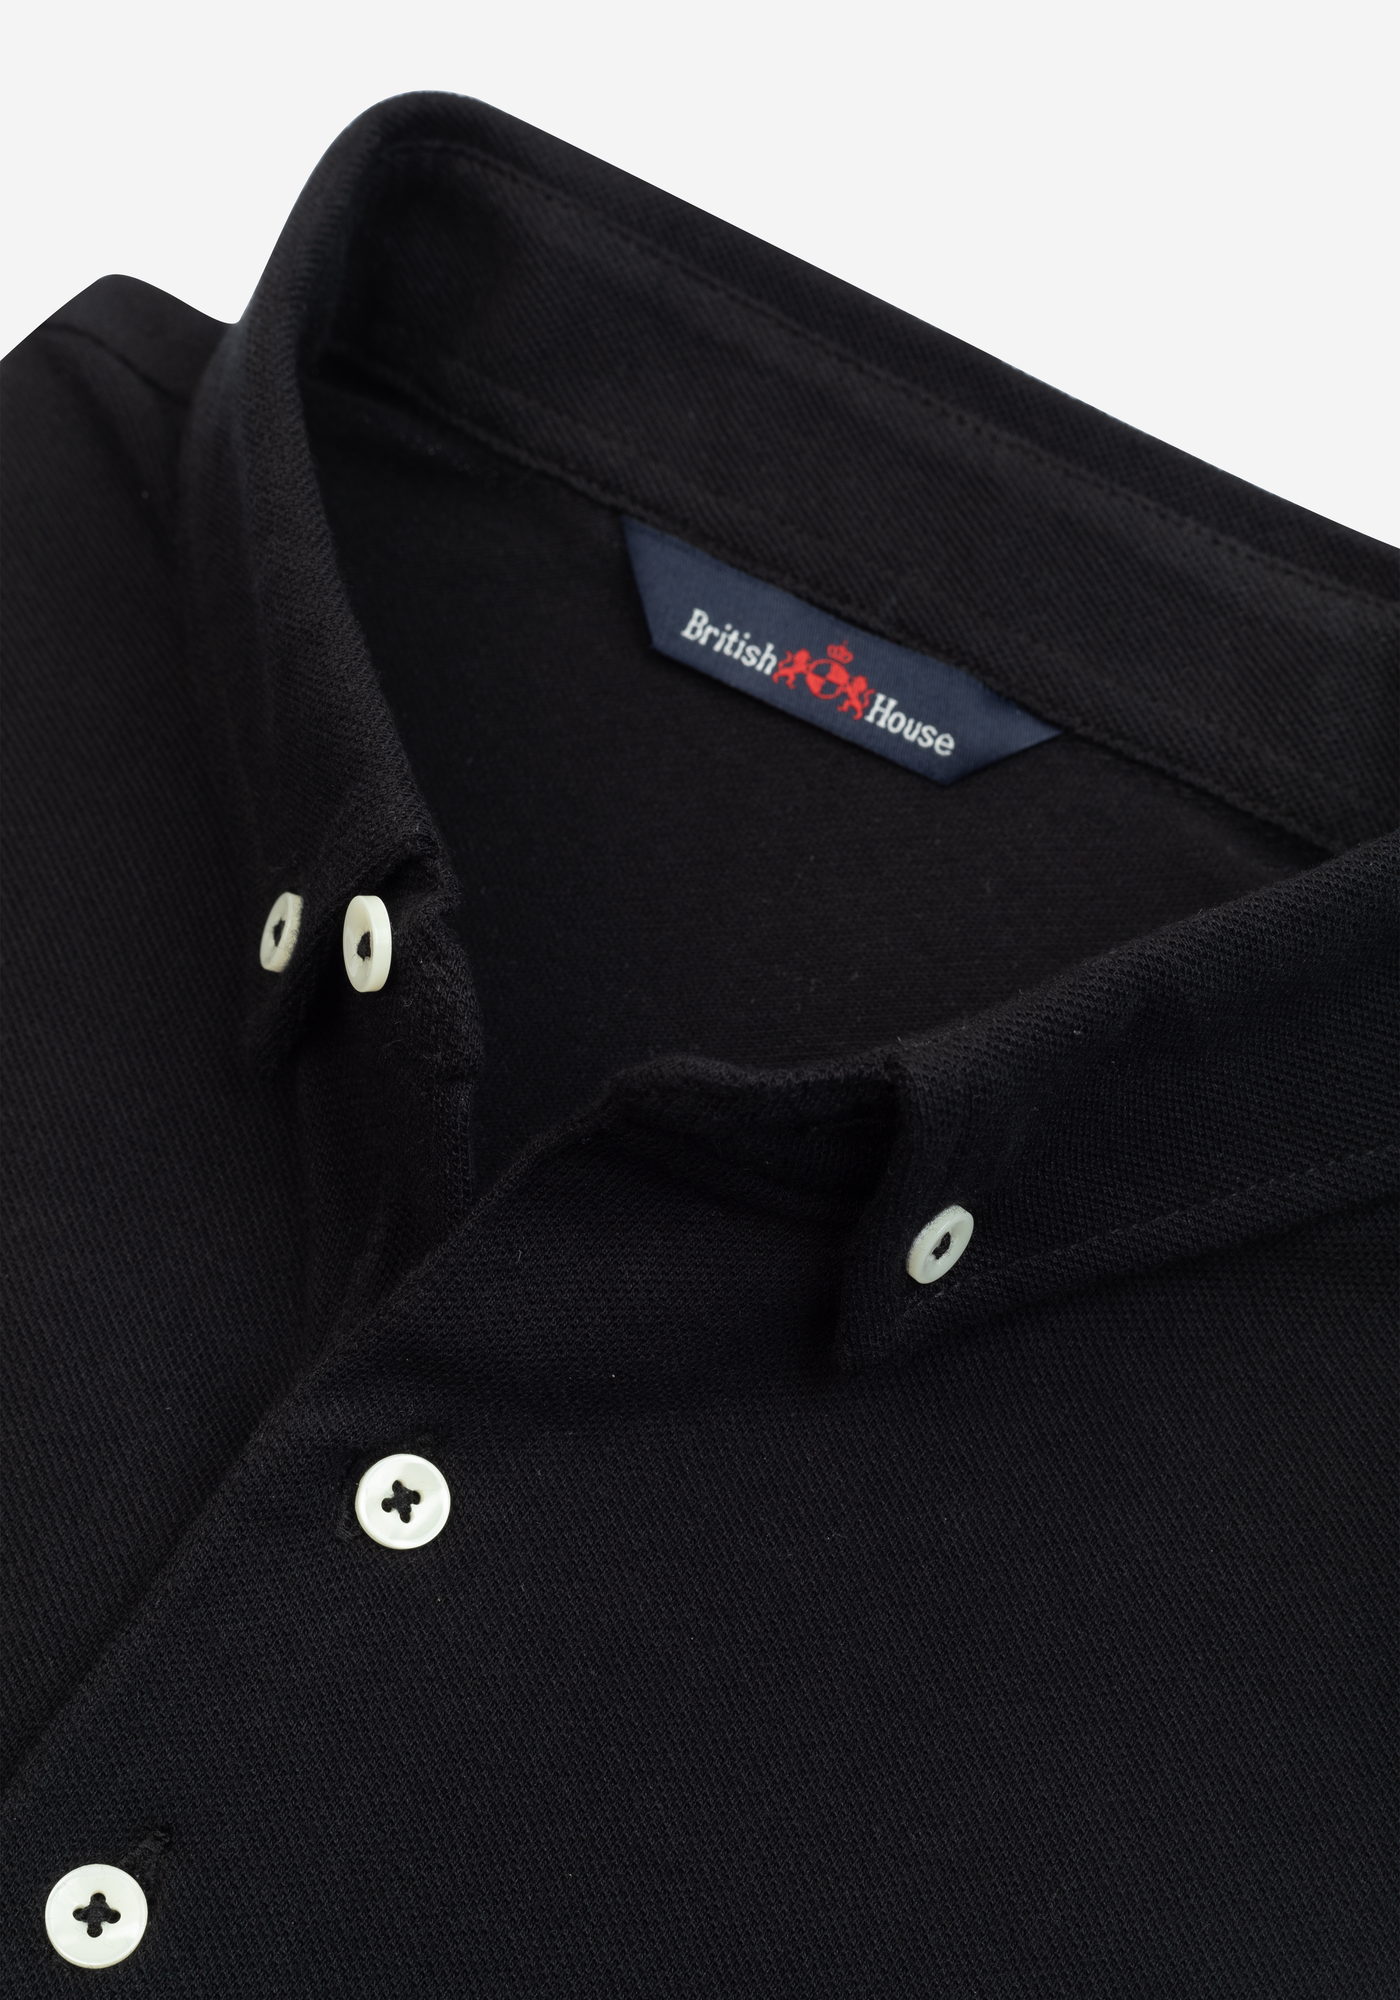 Coal Black Cotton Polo Shirt